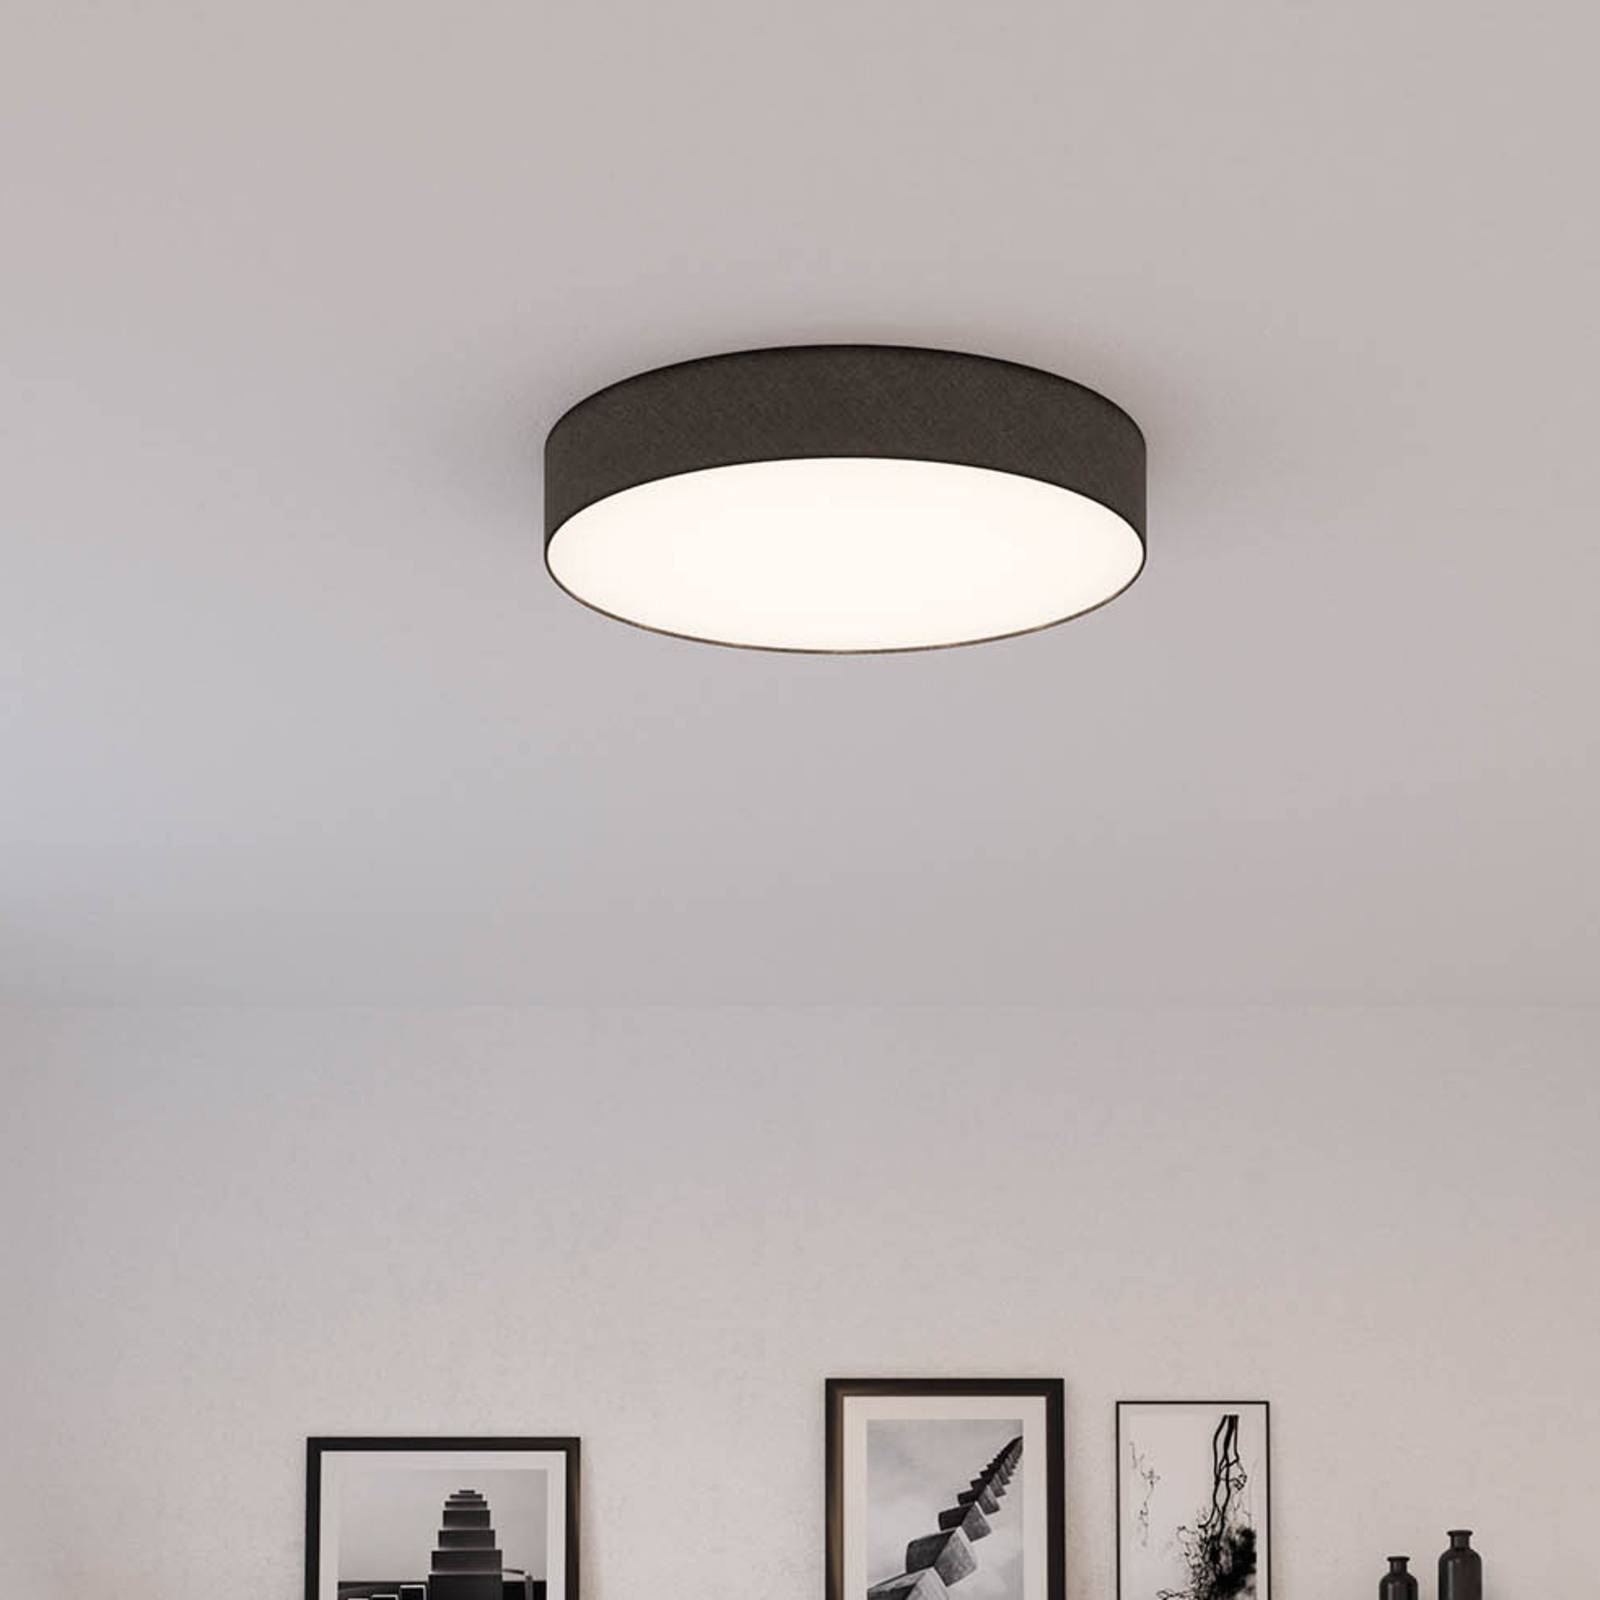 Photos - Chandelier / Lamp Smartwares Mia ceiling light, black, Ø 60 cm 